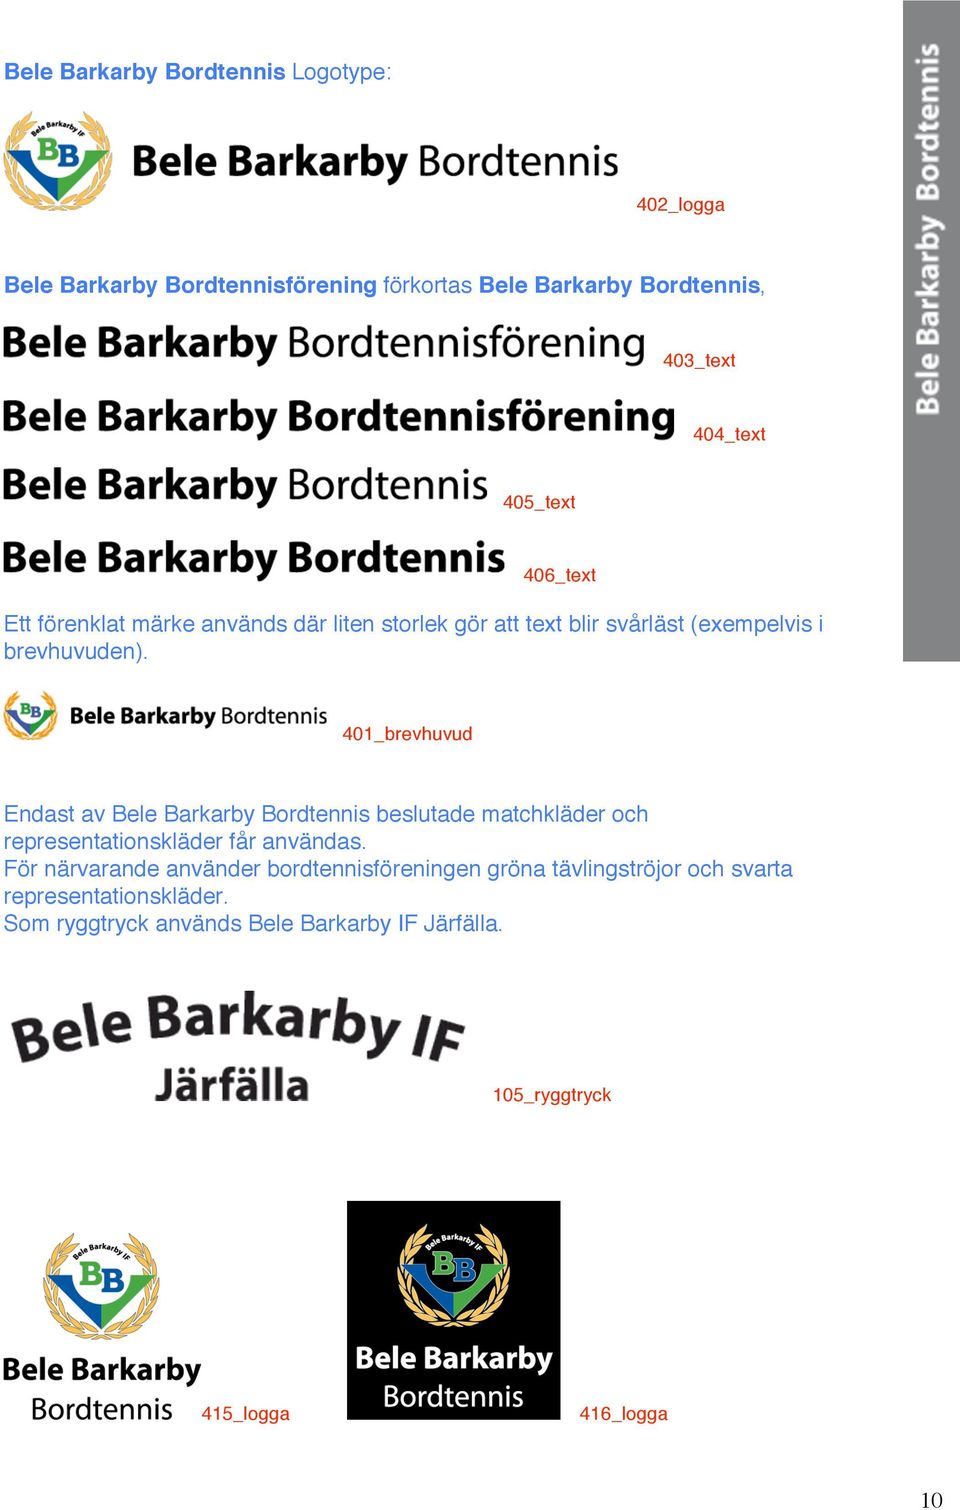 401_brevhuvud Endast av Bele Barkarby Bordtennis beslutade matchkläder och representationskläder får användas.